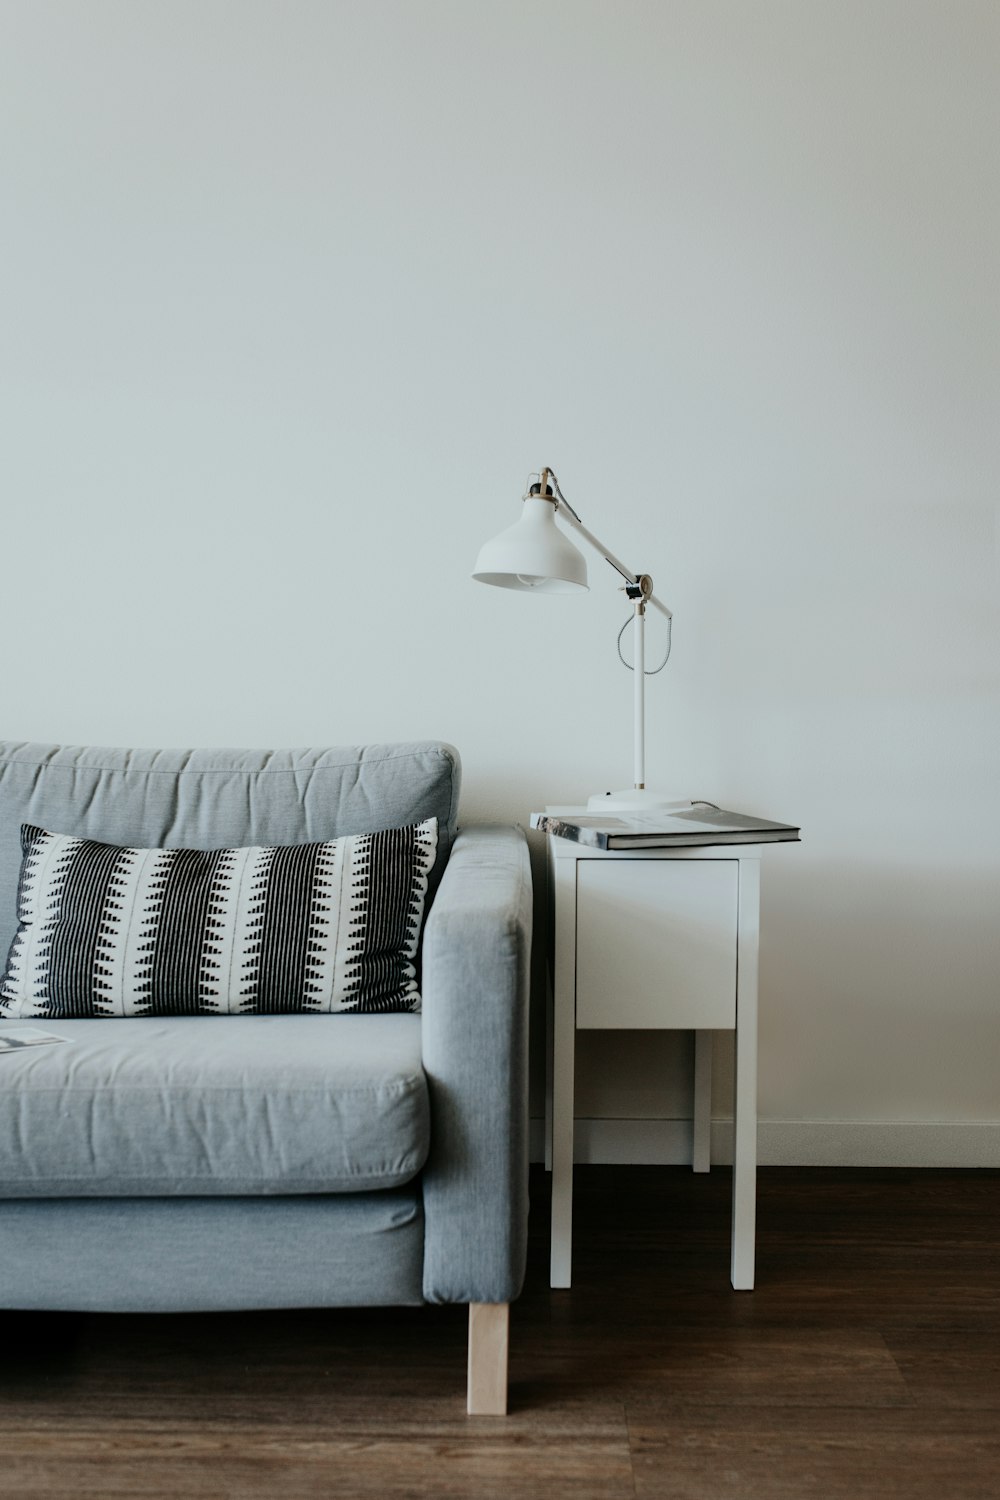 lampada da studio bianca sopra il tavolino in legno bianco accanto al divano in tessuto grigio